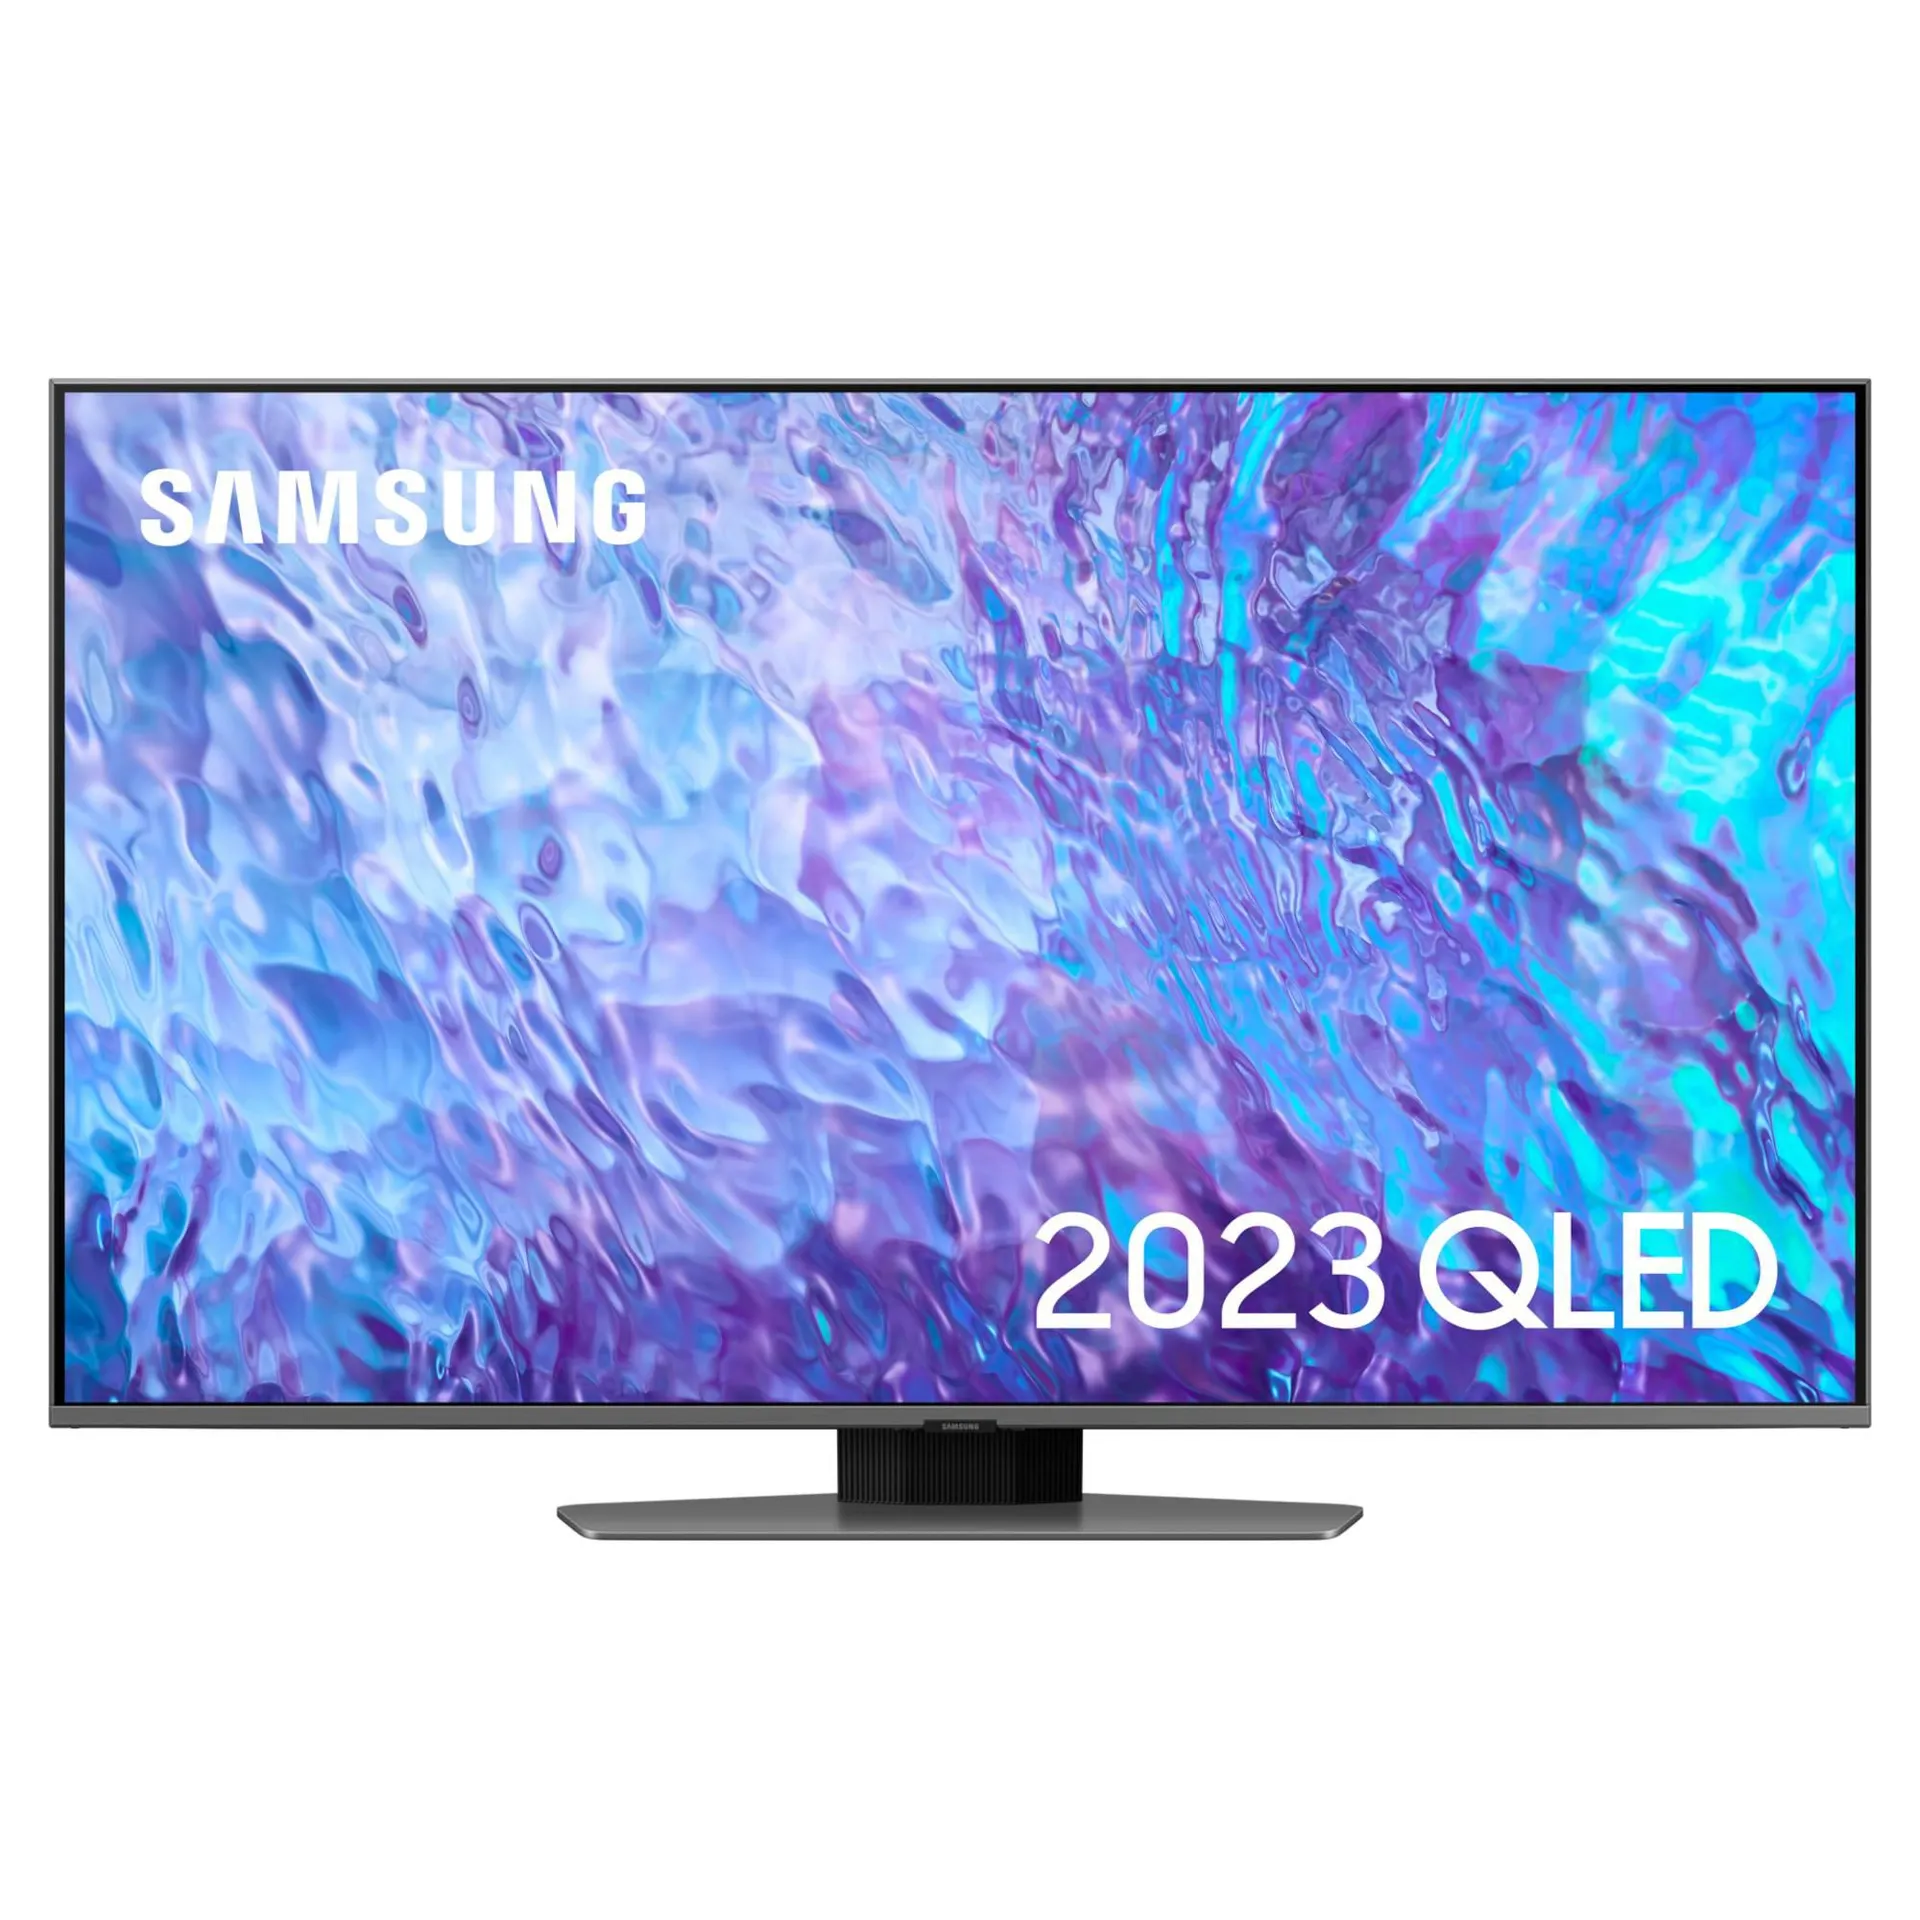 Samsung QE65Q80C 65" QLED 4K HDR Smart TV